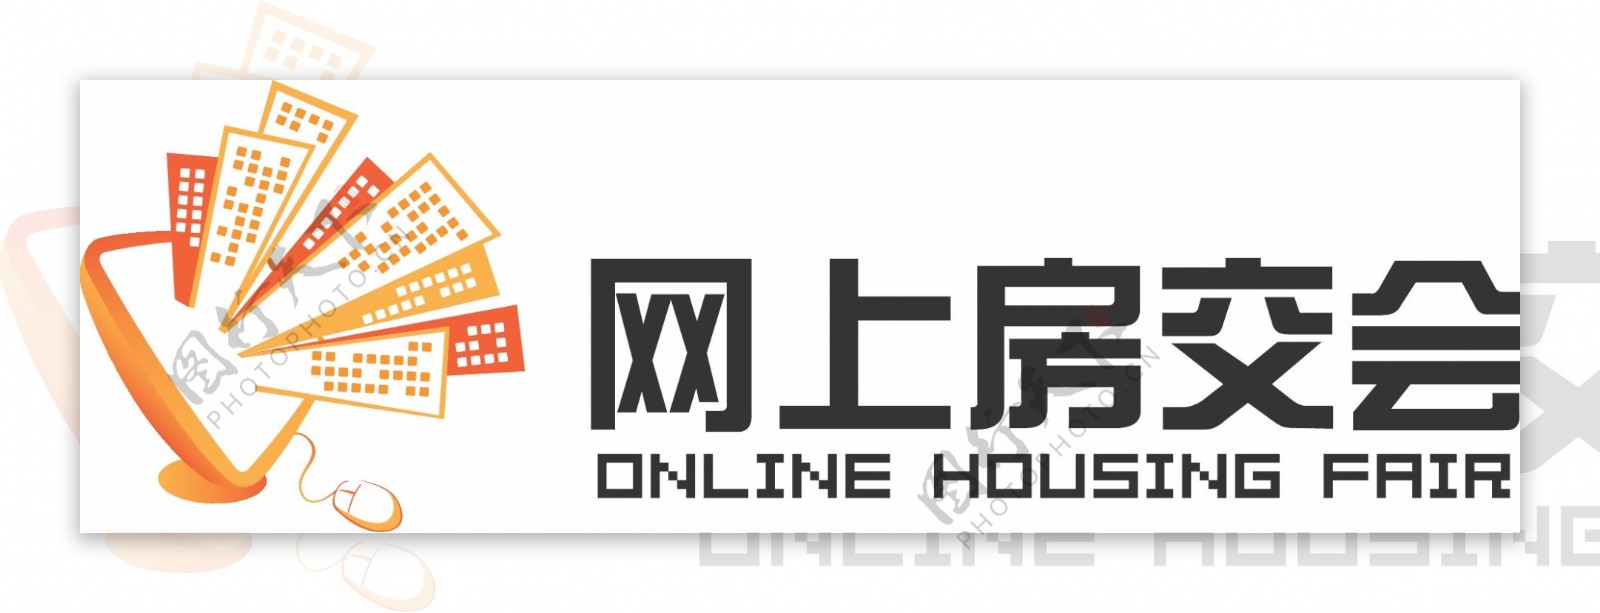 网上房交会logo图片